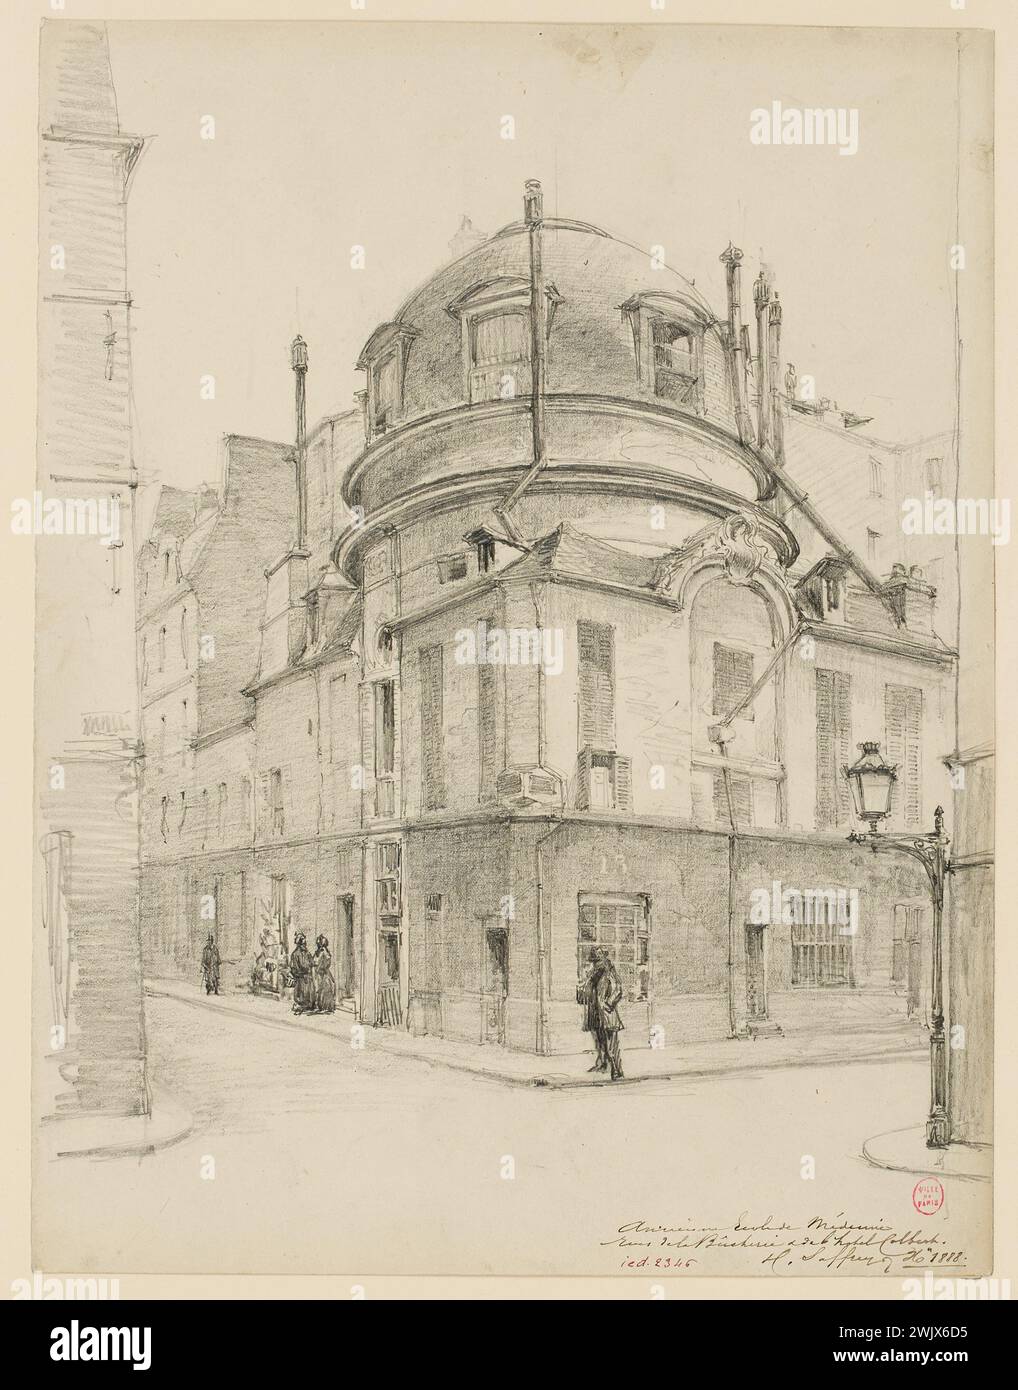 SAFFREY, Henri Alexandre (n. - D.1896), the old school of medicine, rue de la Bûcherie, 1888 (dummy title), 1888. lead mine. Carnavalet museum, history of Paris. Stock Photo